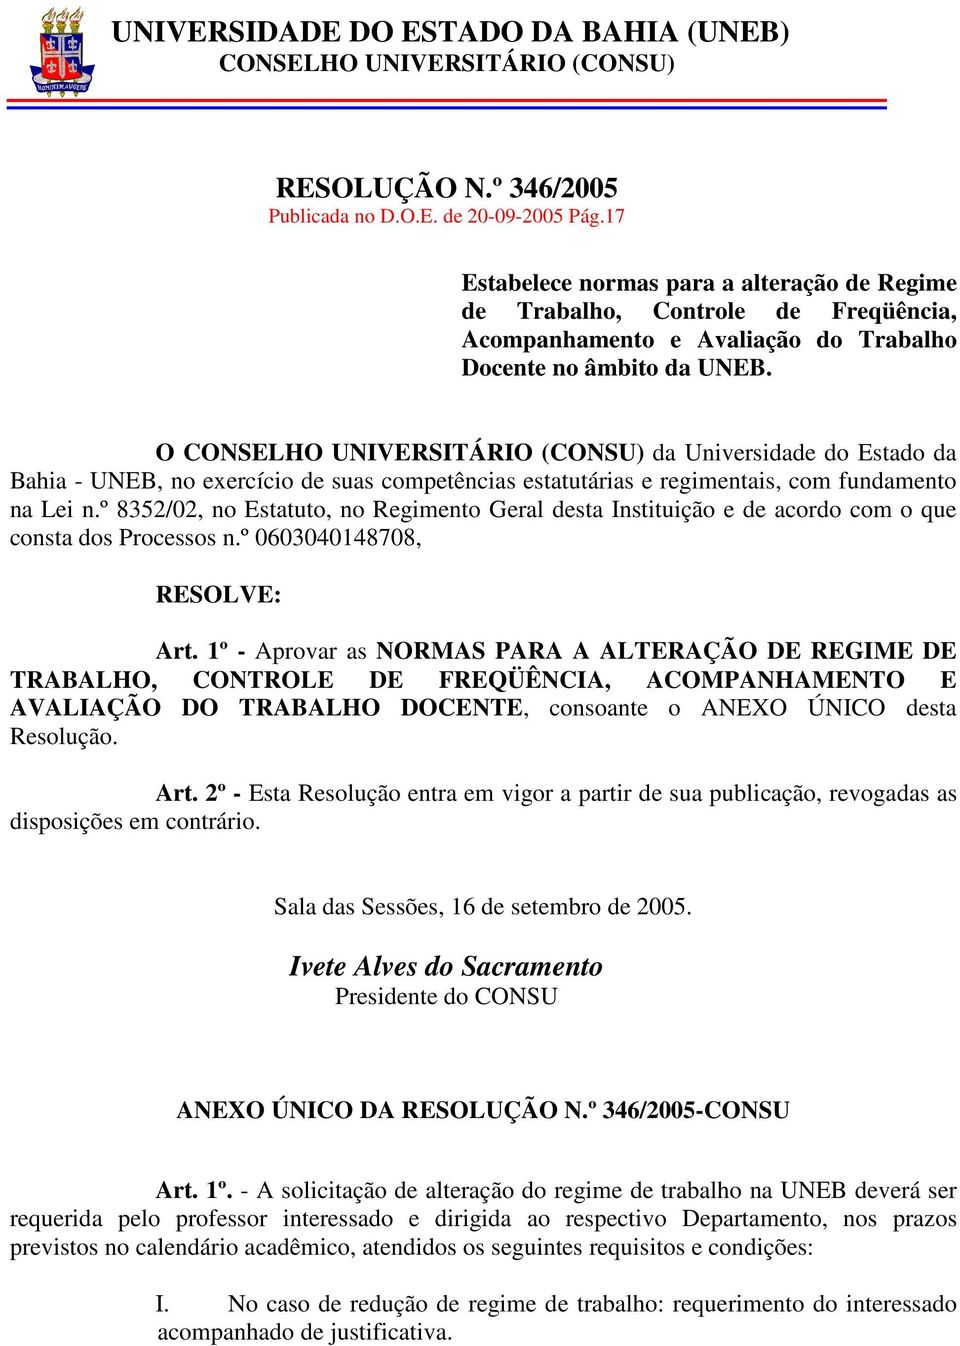 O CONSELHO UNIVERSITÁRIO (CONSU) da Universidade do Estado da Bahia - UNEB, no exercício de suas competências estatutárias e regimentais, com fundamento na Lei n.